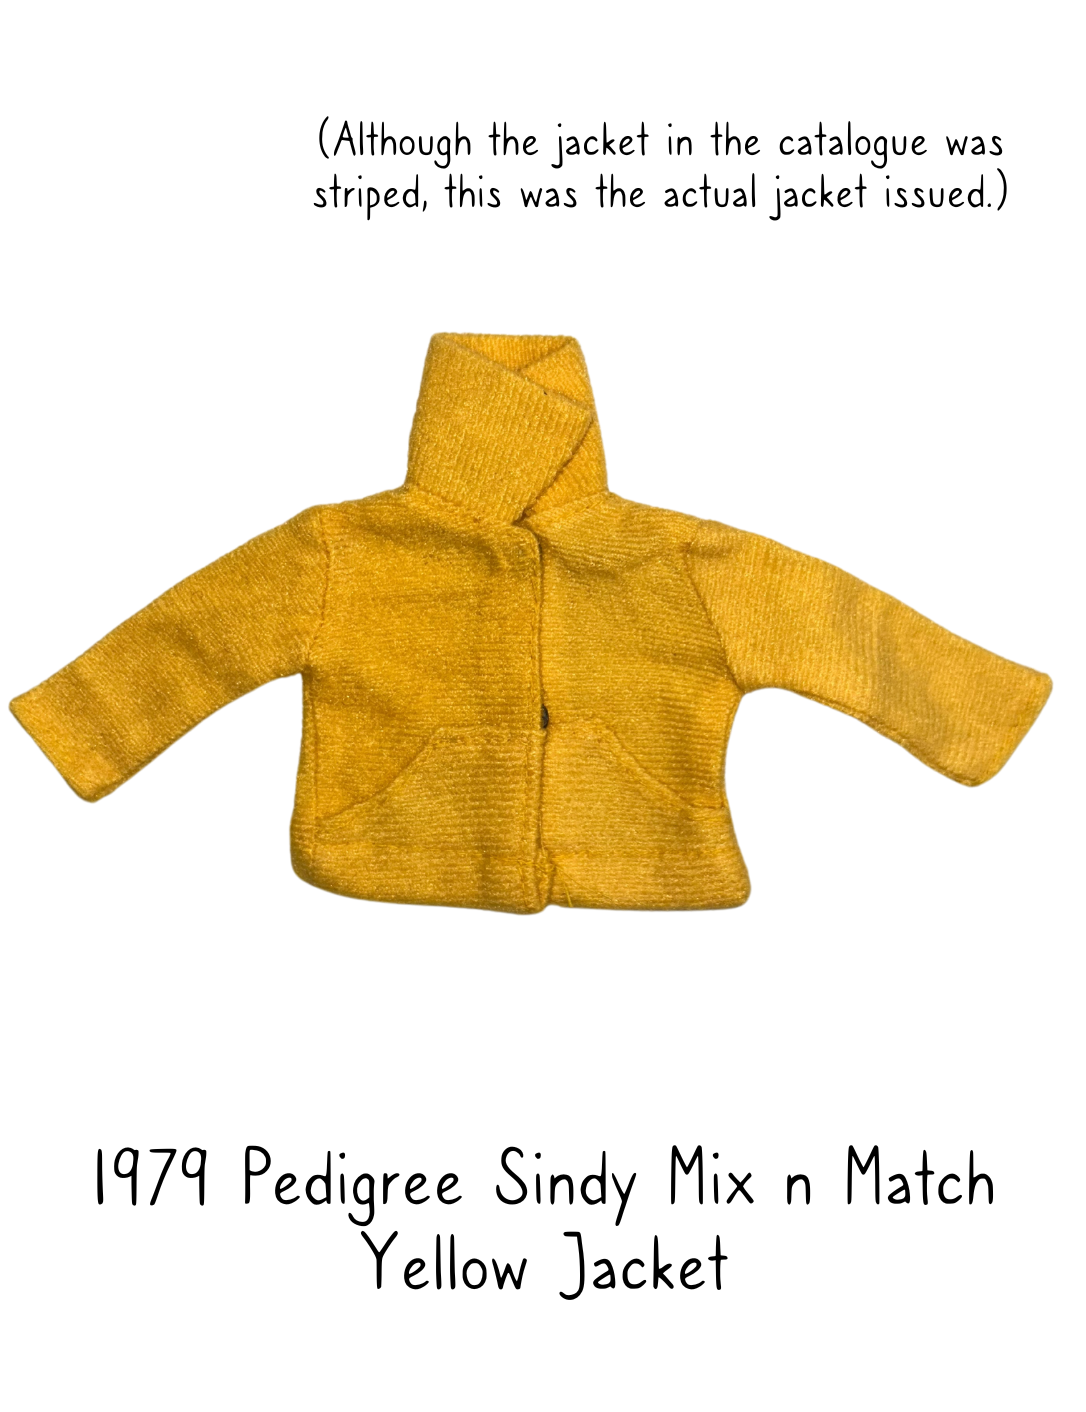 Pedigree Sindy 1979 Mix n Match Yellow Jacket